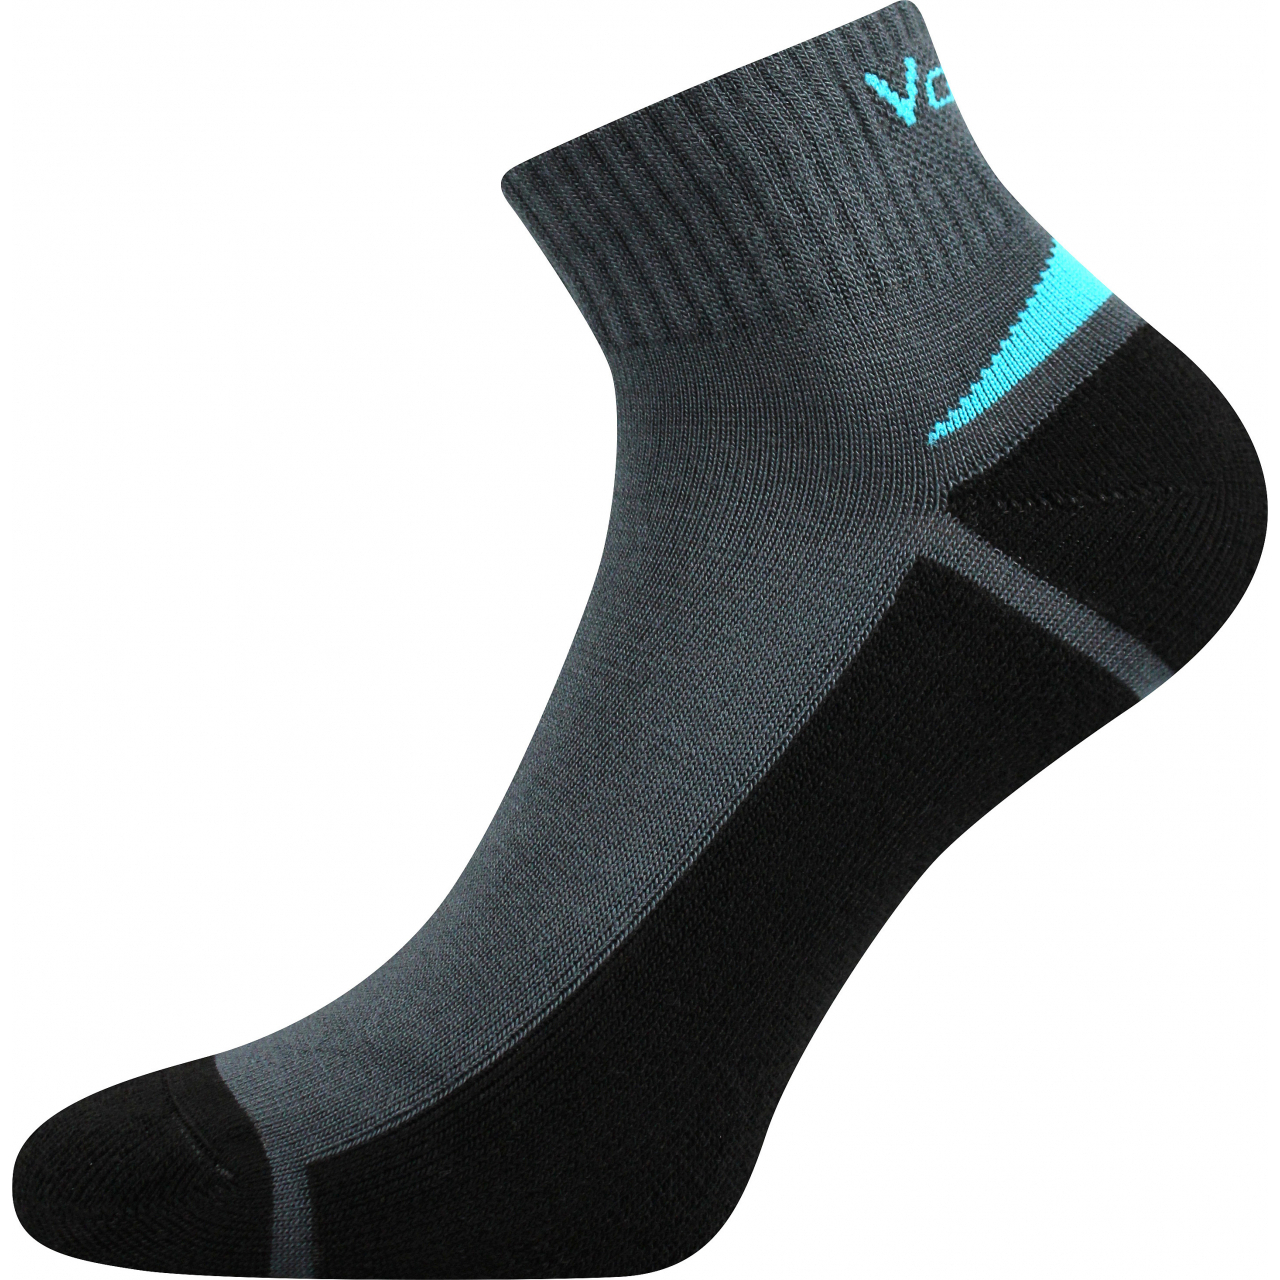 Ponožky snížené sportovní Voxx Aston silproX - tmavě šedé-černé, 43-46